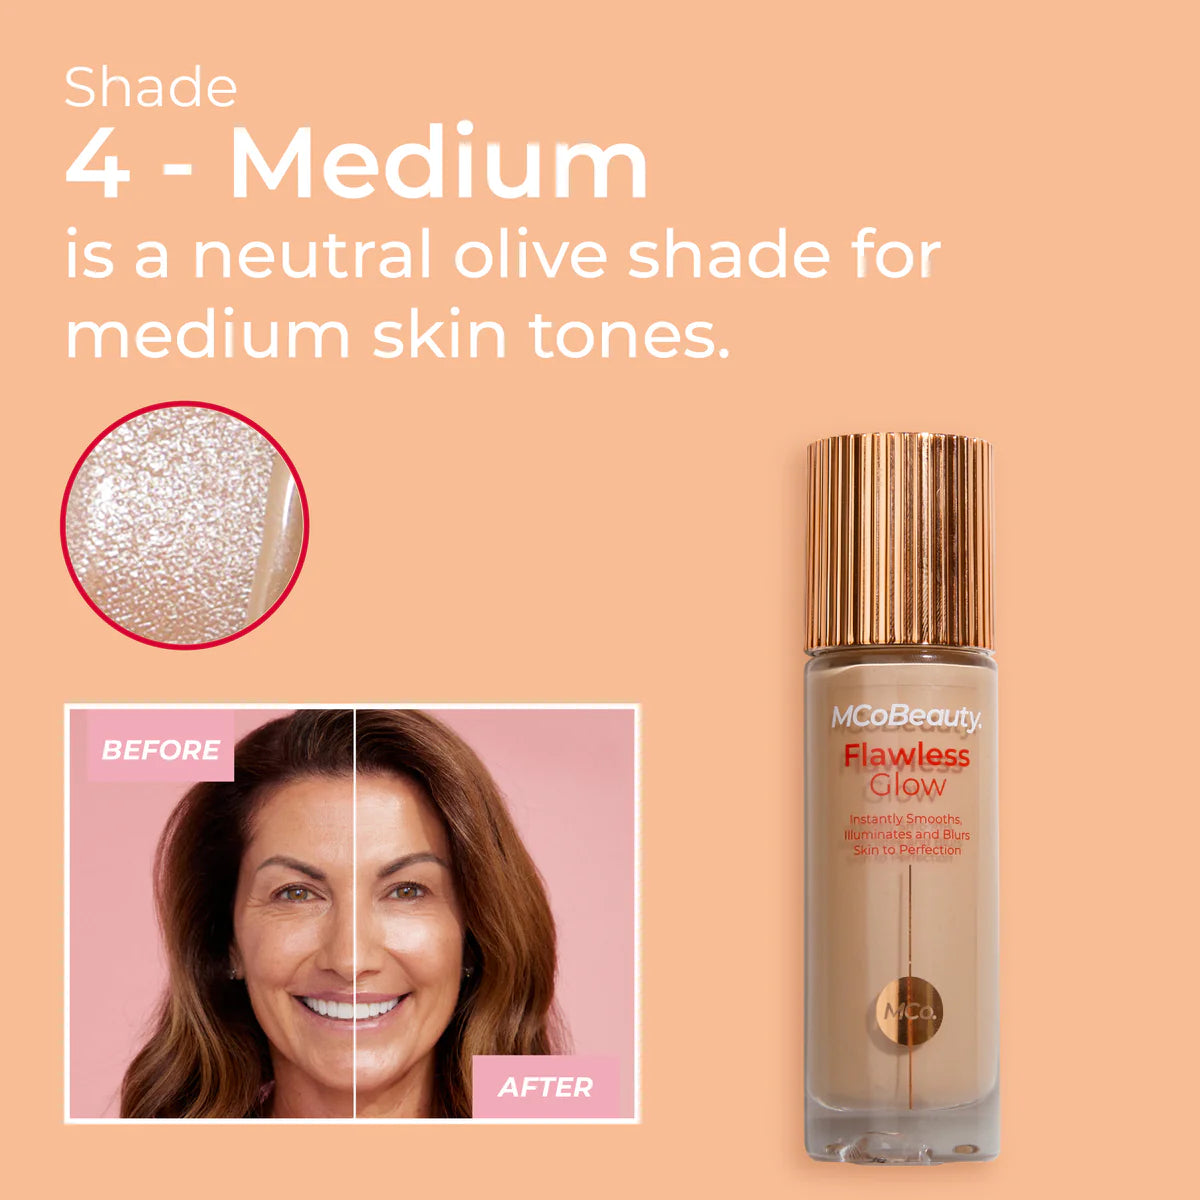 Flawless Glow Luminous Skin Filter Shade Medium #4